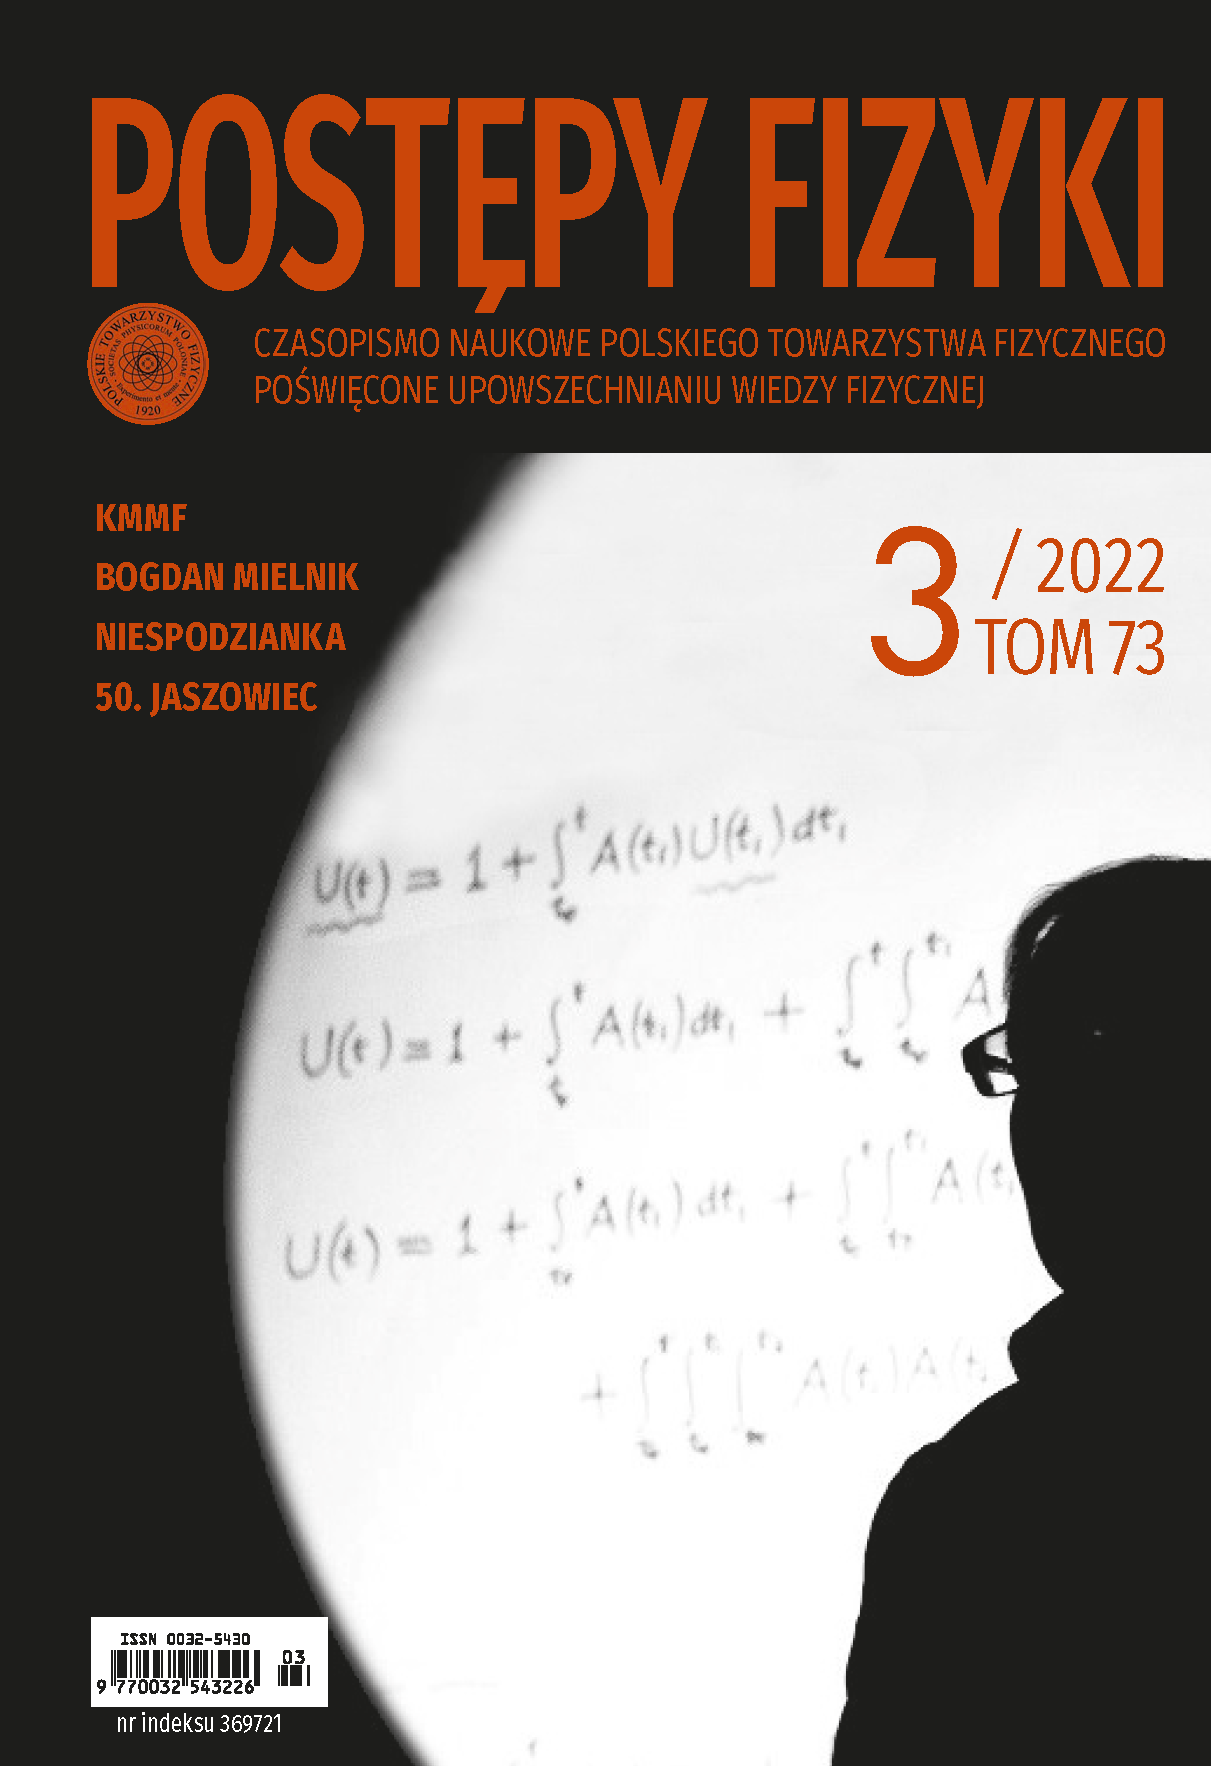 Postępy Fizyki 73 (3) 2022